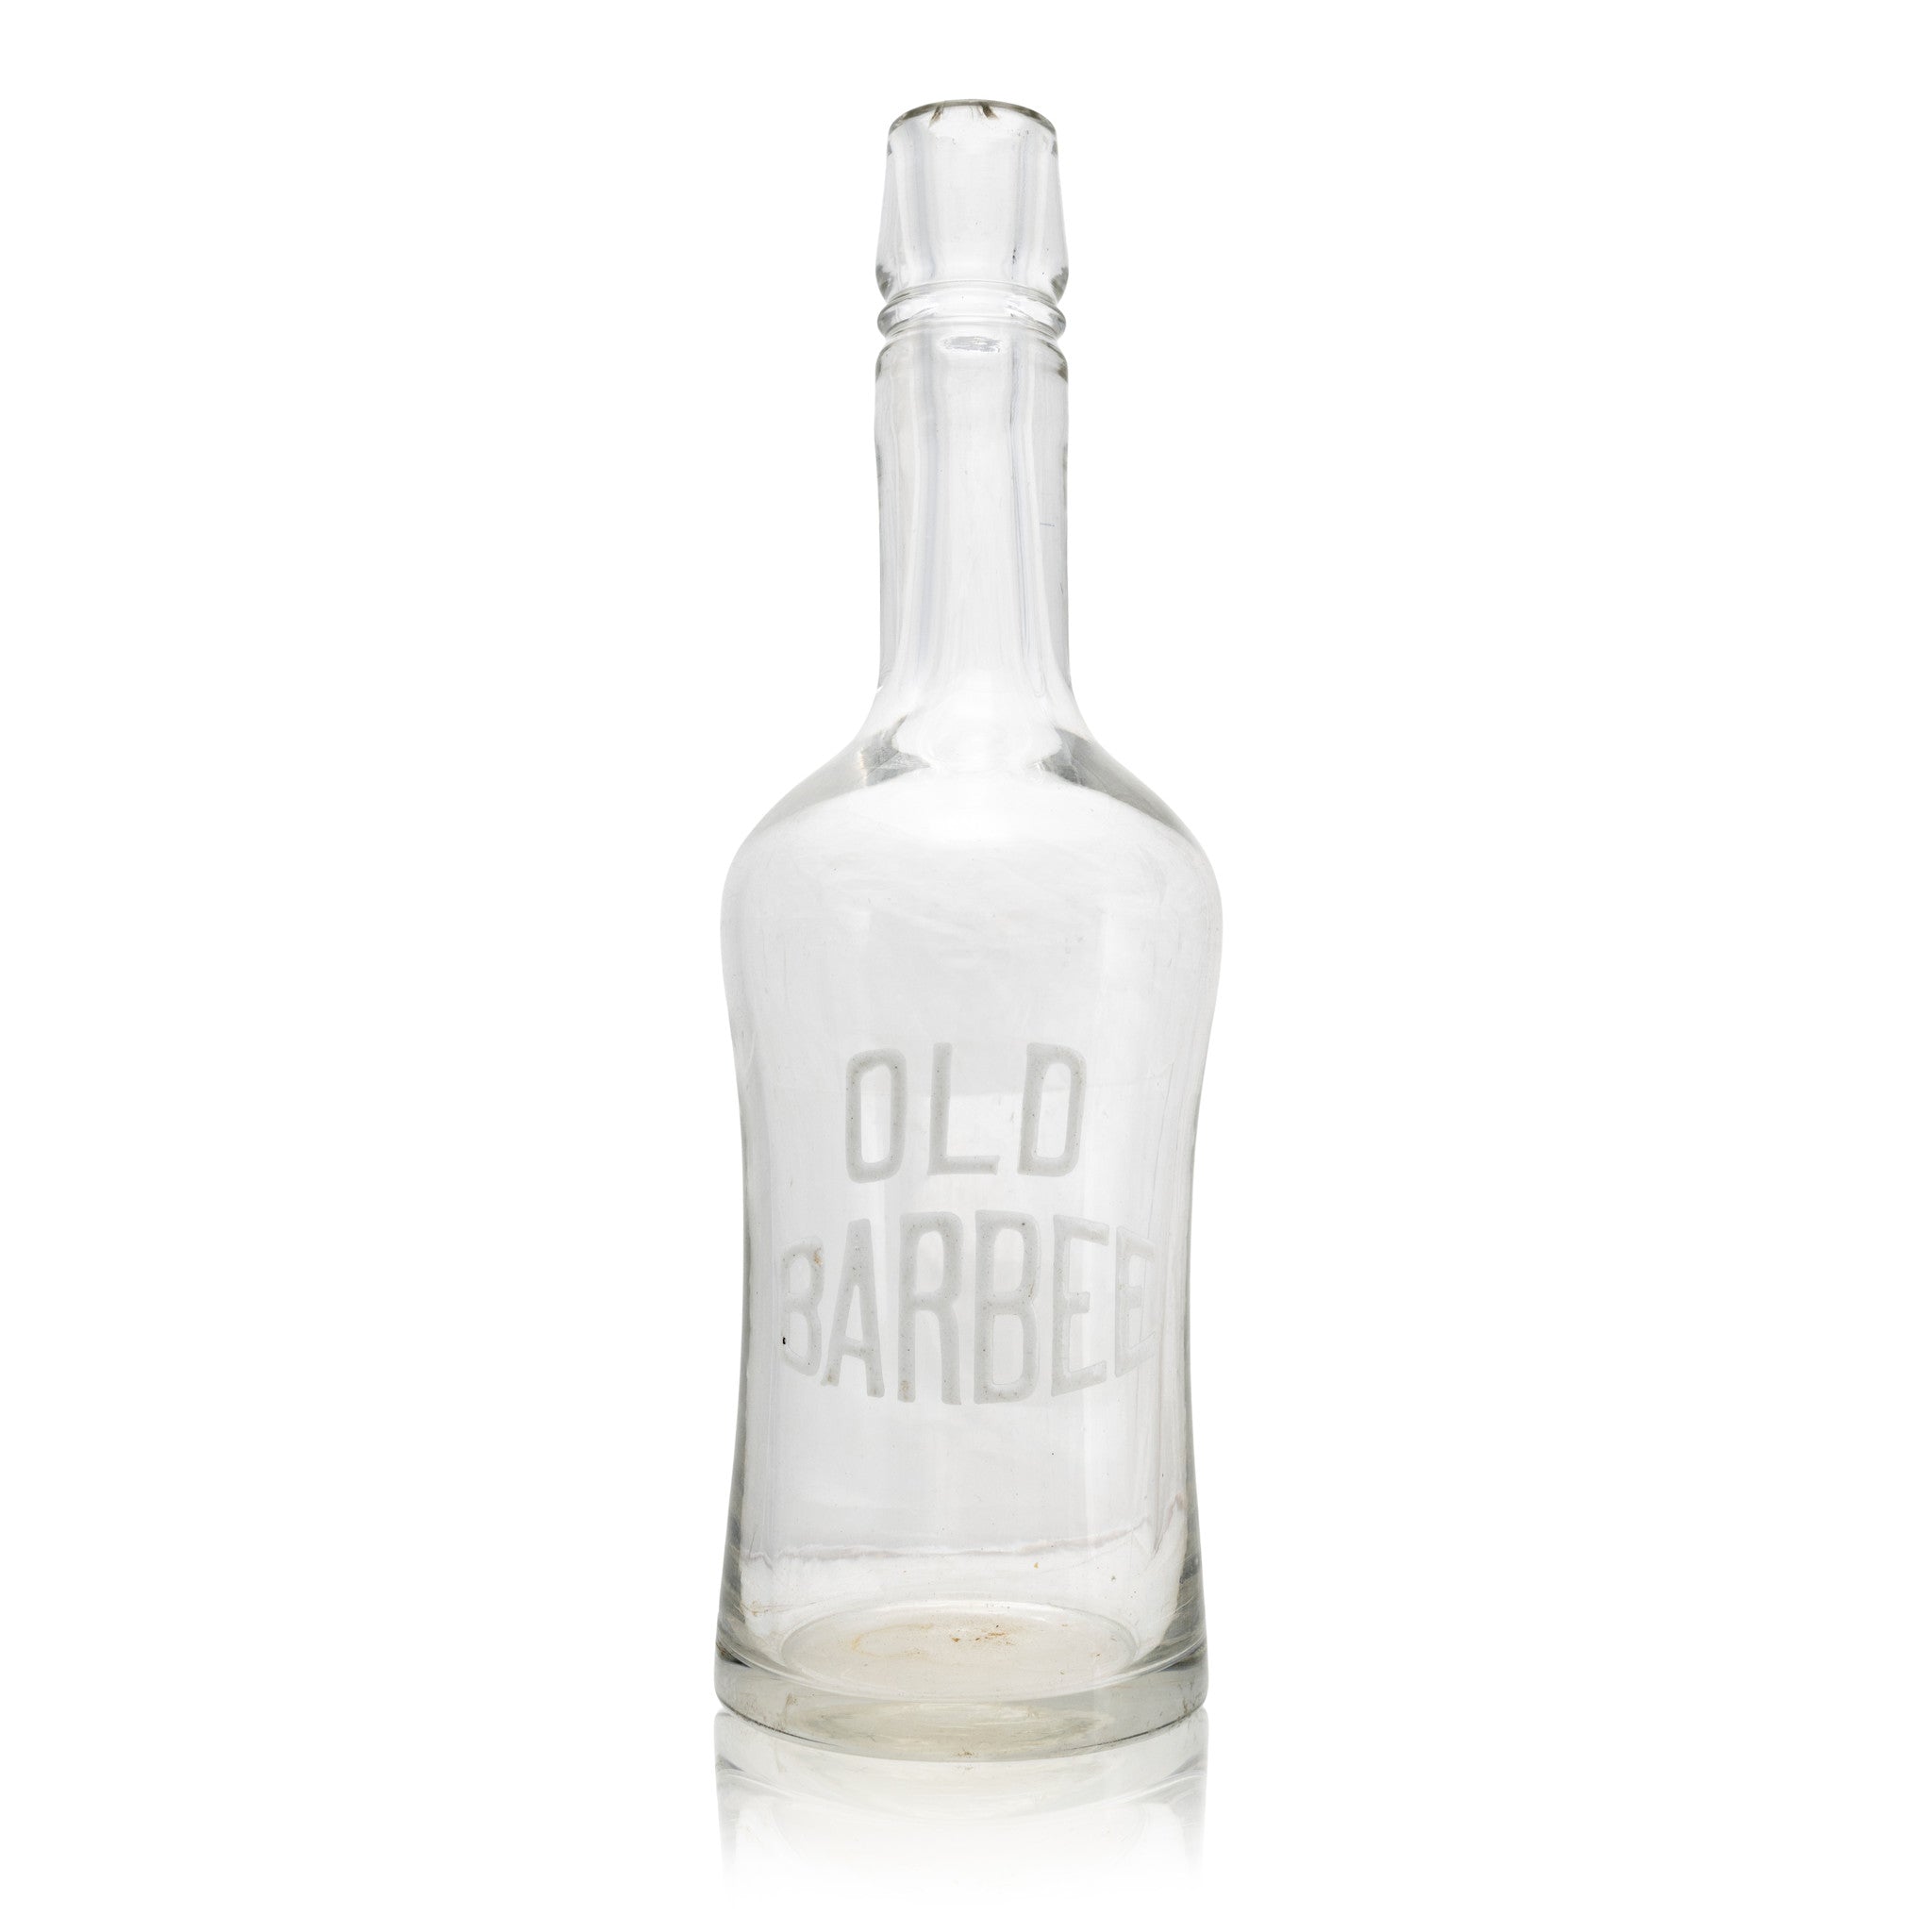 "Barbee" Back Bar Bottle, Western, Drinking, Bottle